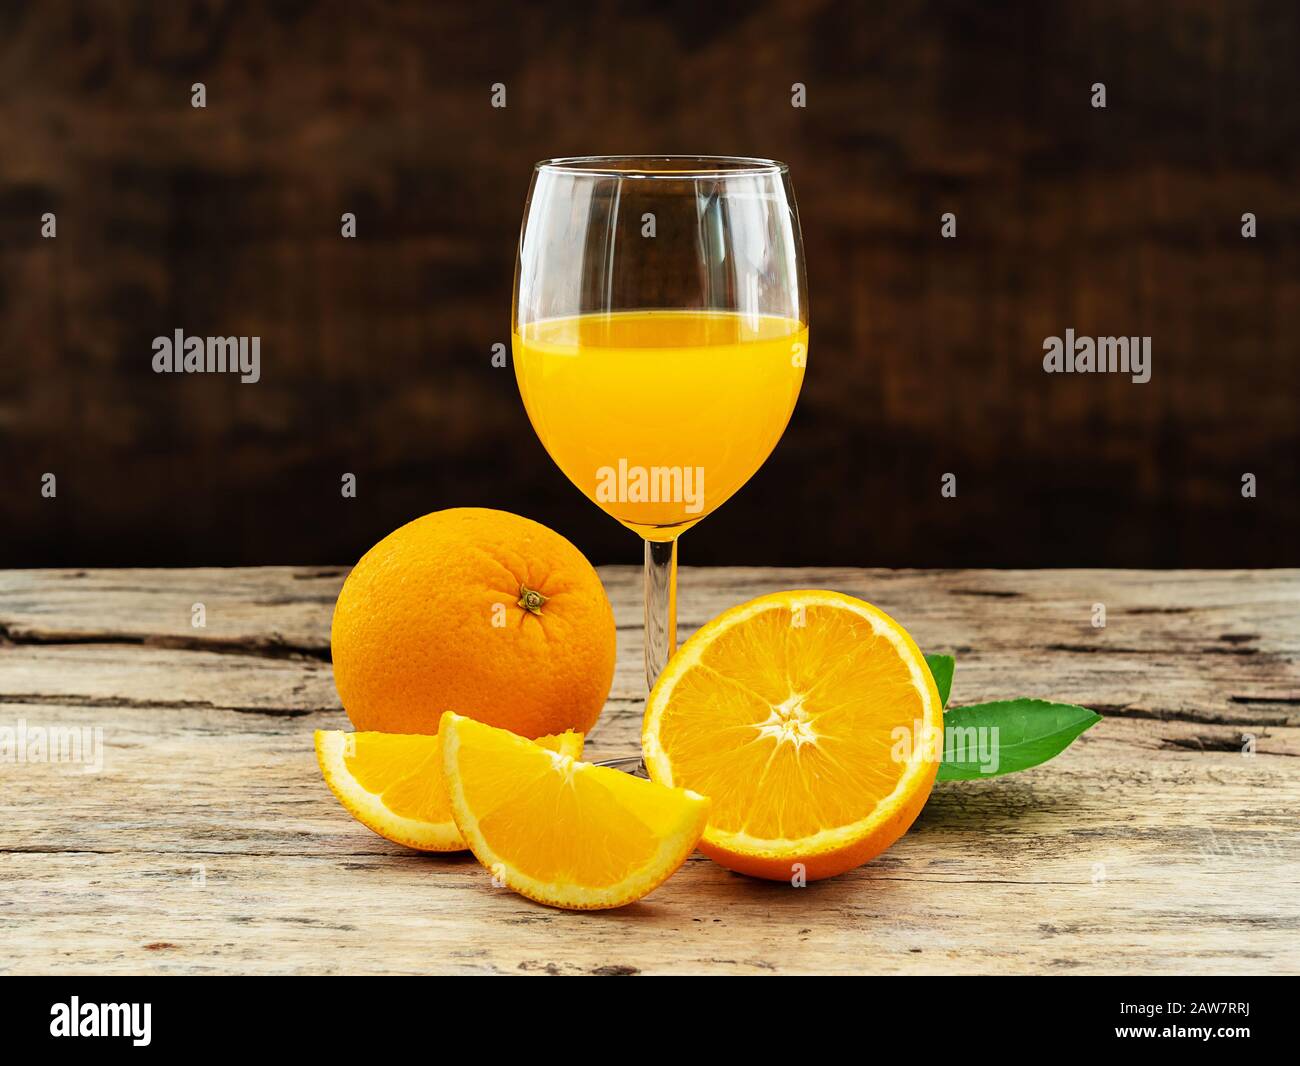 Ein Glas frischen Orangensaft und eine Gruppe frischer Orangenfrüchte mit grünen Blättern auf Holzhintergrund. Obstprodukt-Display oder Montage, Studioaufnahme Stockfoto